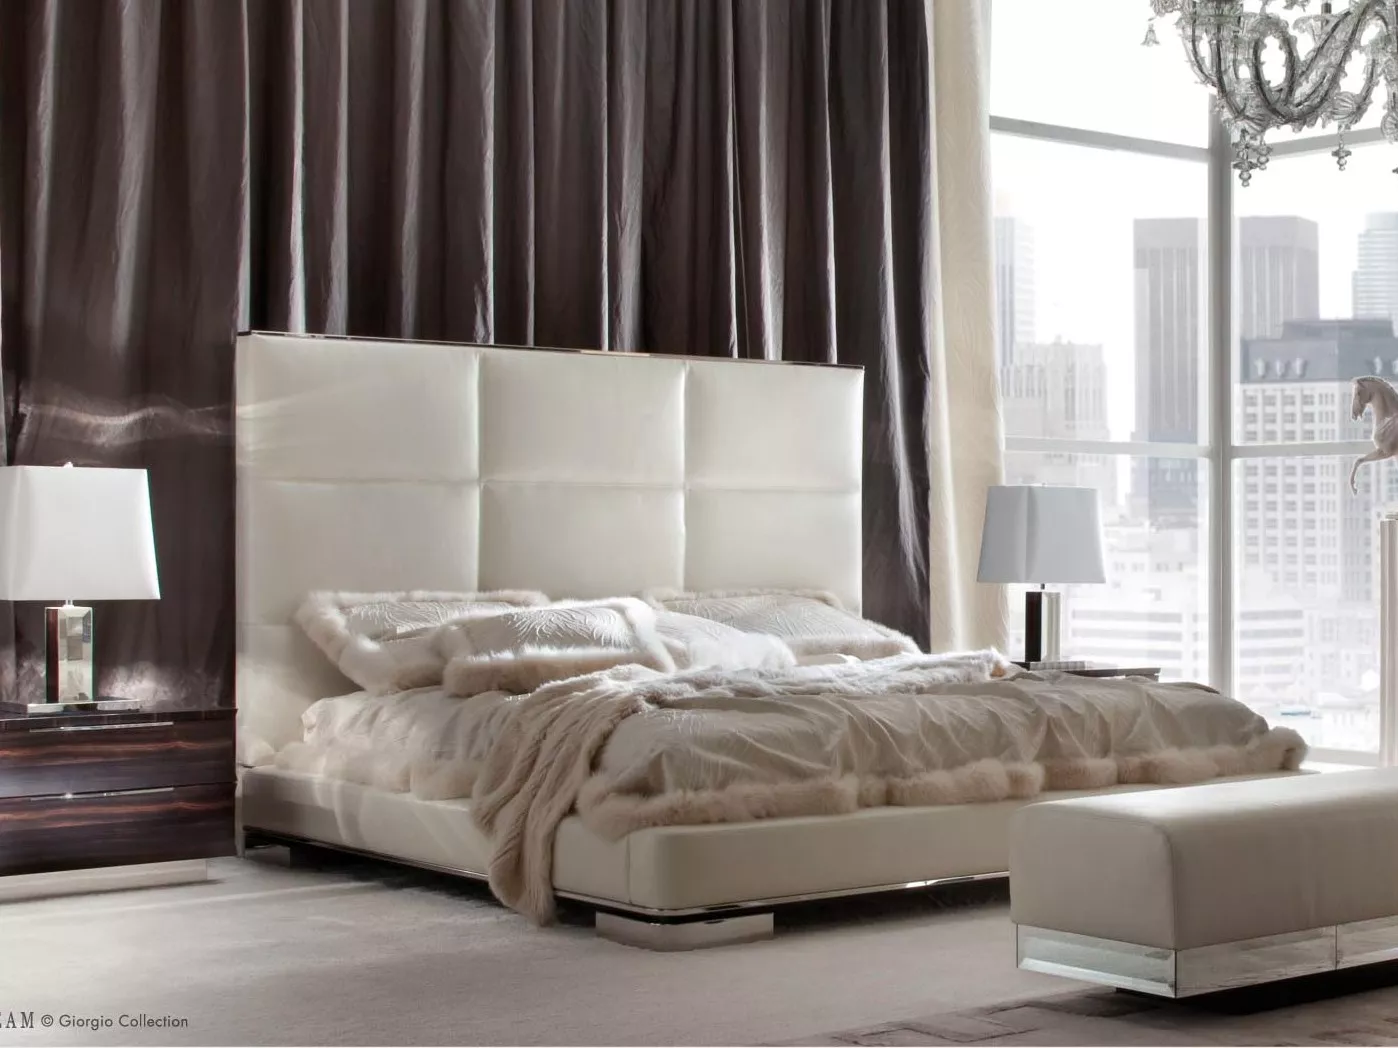 Кровать Daydream Giorgio Collection 231, 232, 234 — купить по цене фабрики